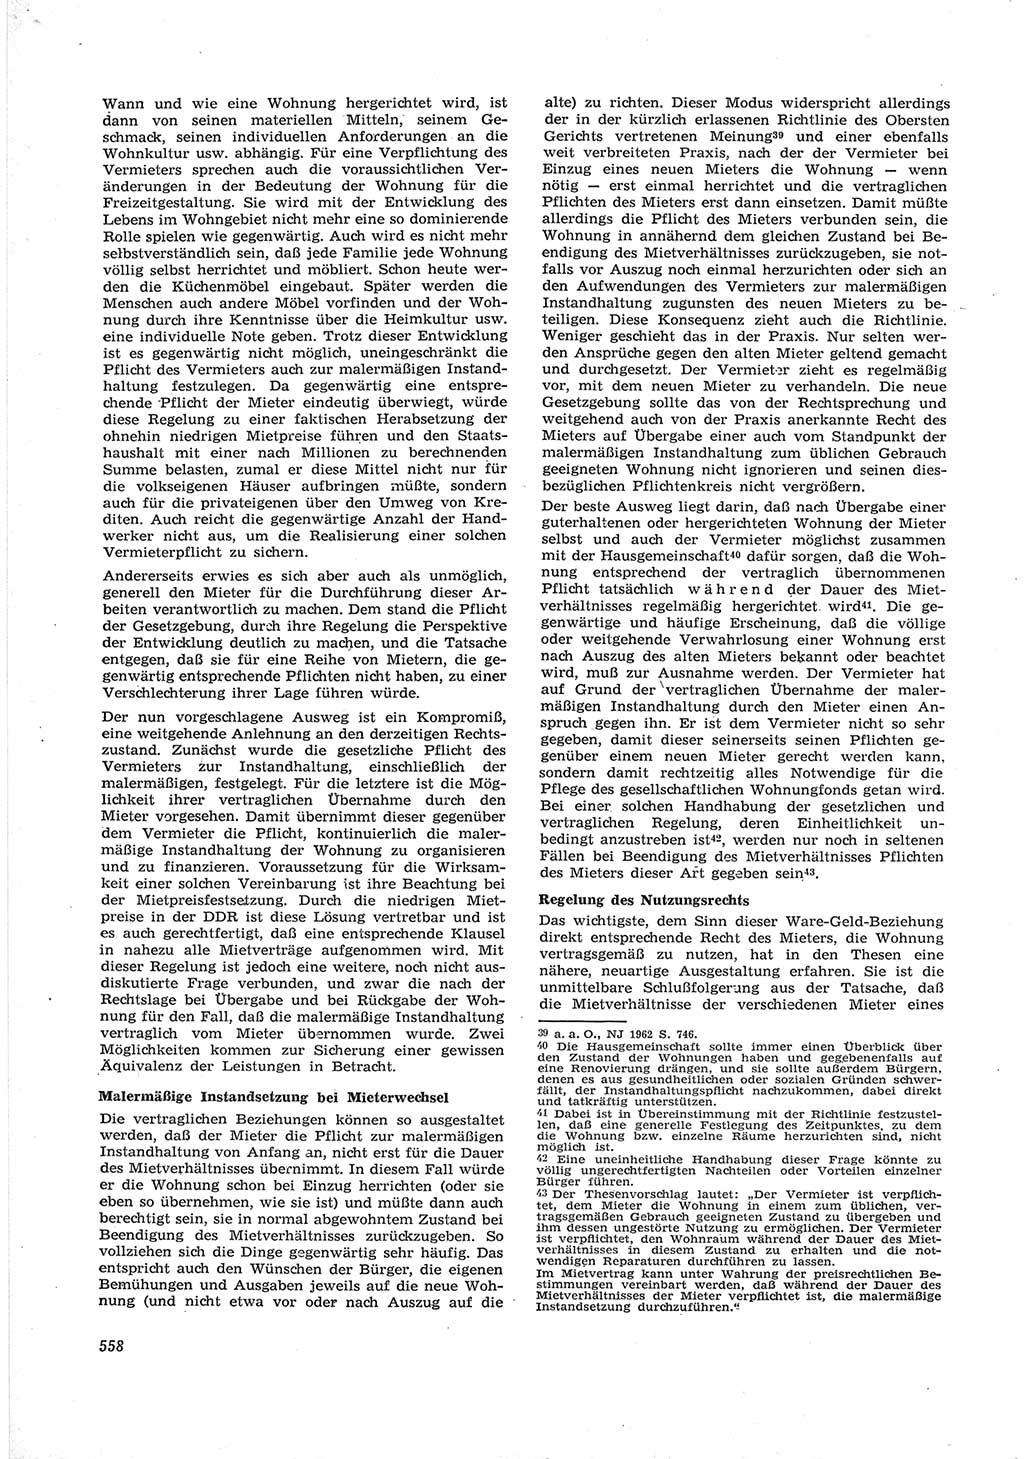 Neue Justiz (NJ), Zeitschrift für Recht und Rechtswissenschaft [Deutsche Demokratische Republik (DDR)], 17. Jahrgang 1963, Seite 558 (NJ DDR 1963, S. 558)